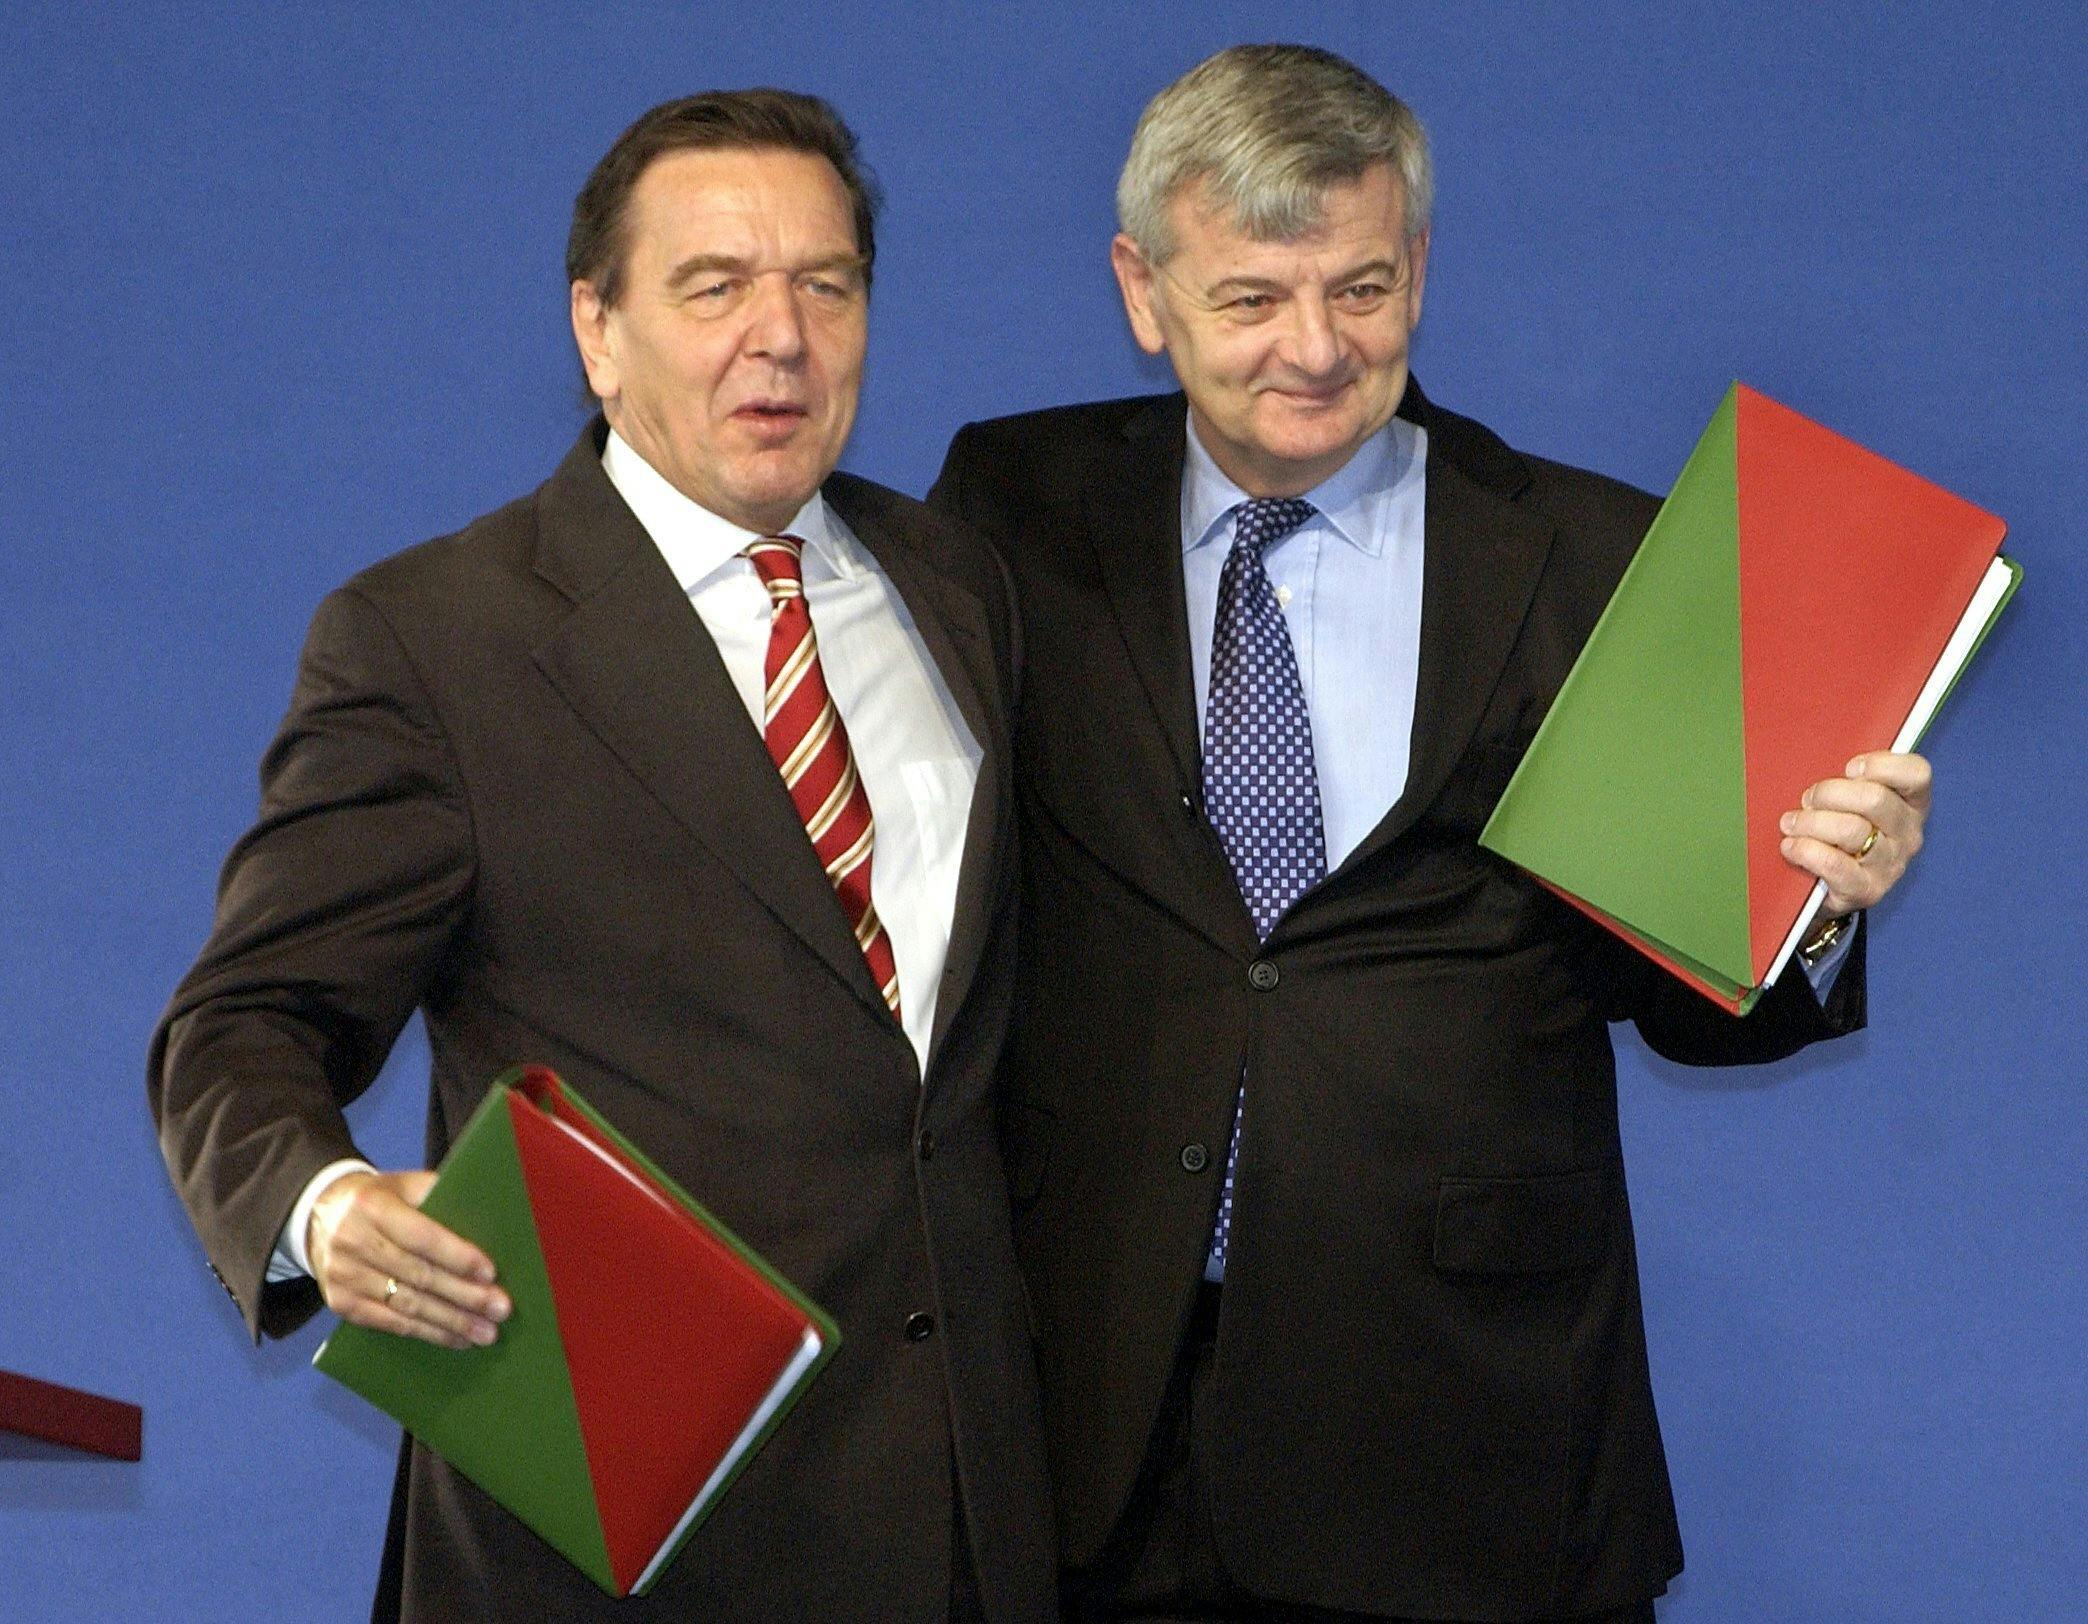 Gerhard Schröder und Joschka Fischer stehen zusammen vor blauem Hintergrund und halten jeweils ein Buch mit grün-rotem Umschlag hoch.